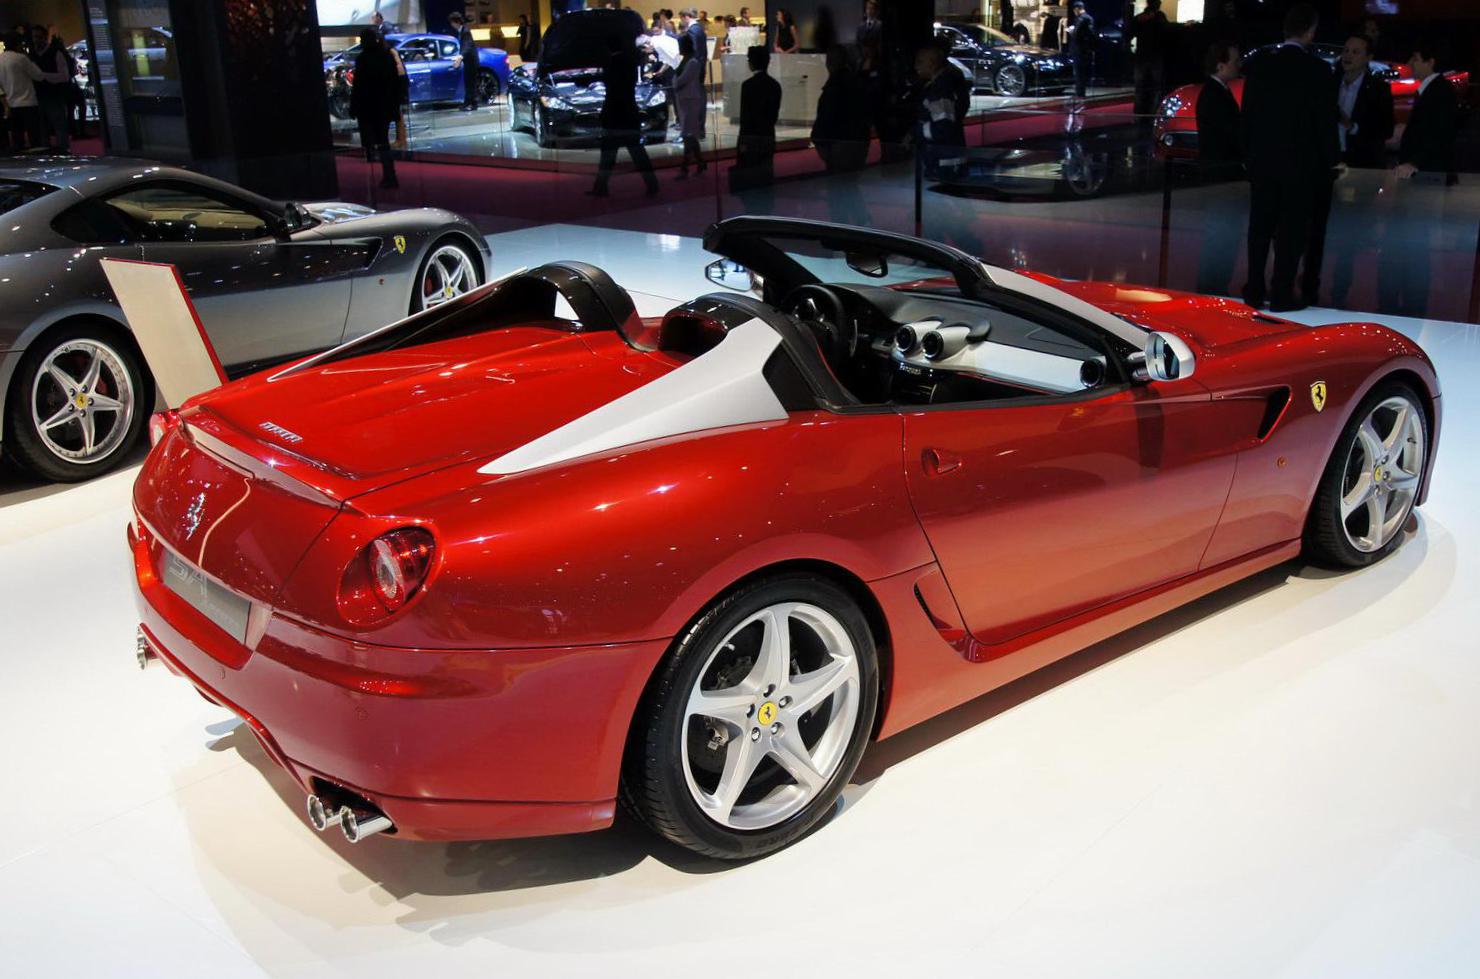 SA Aperta Ferrari Specification coupe